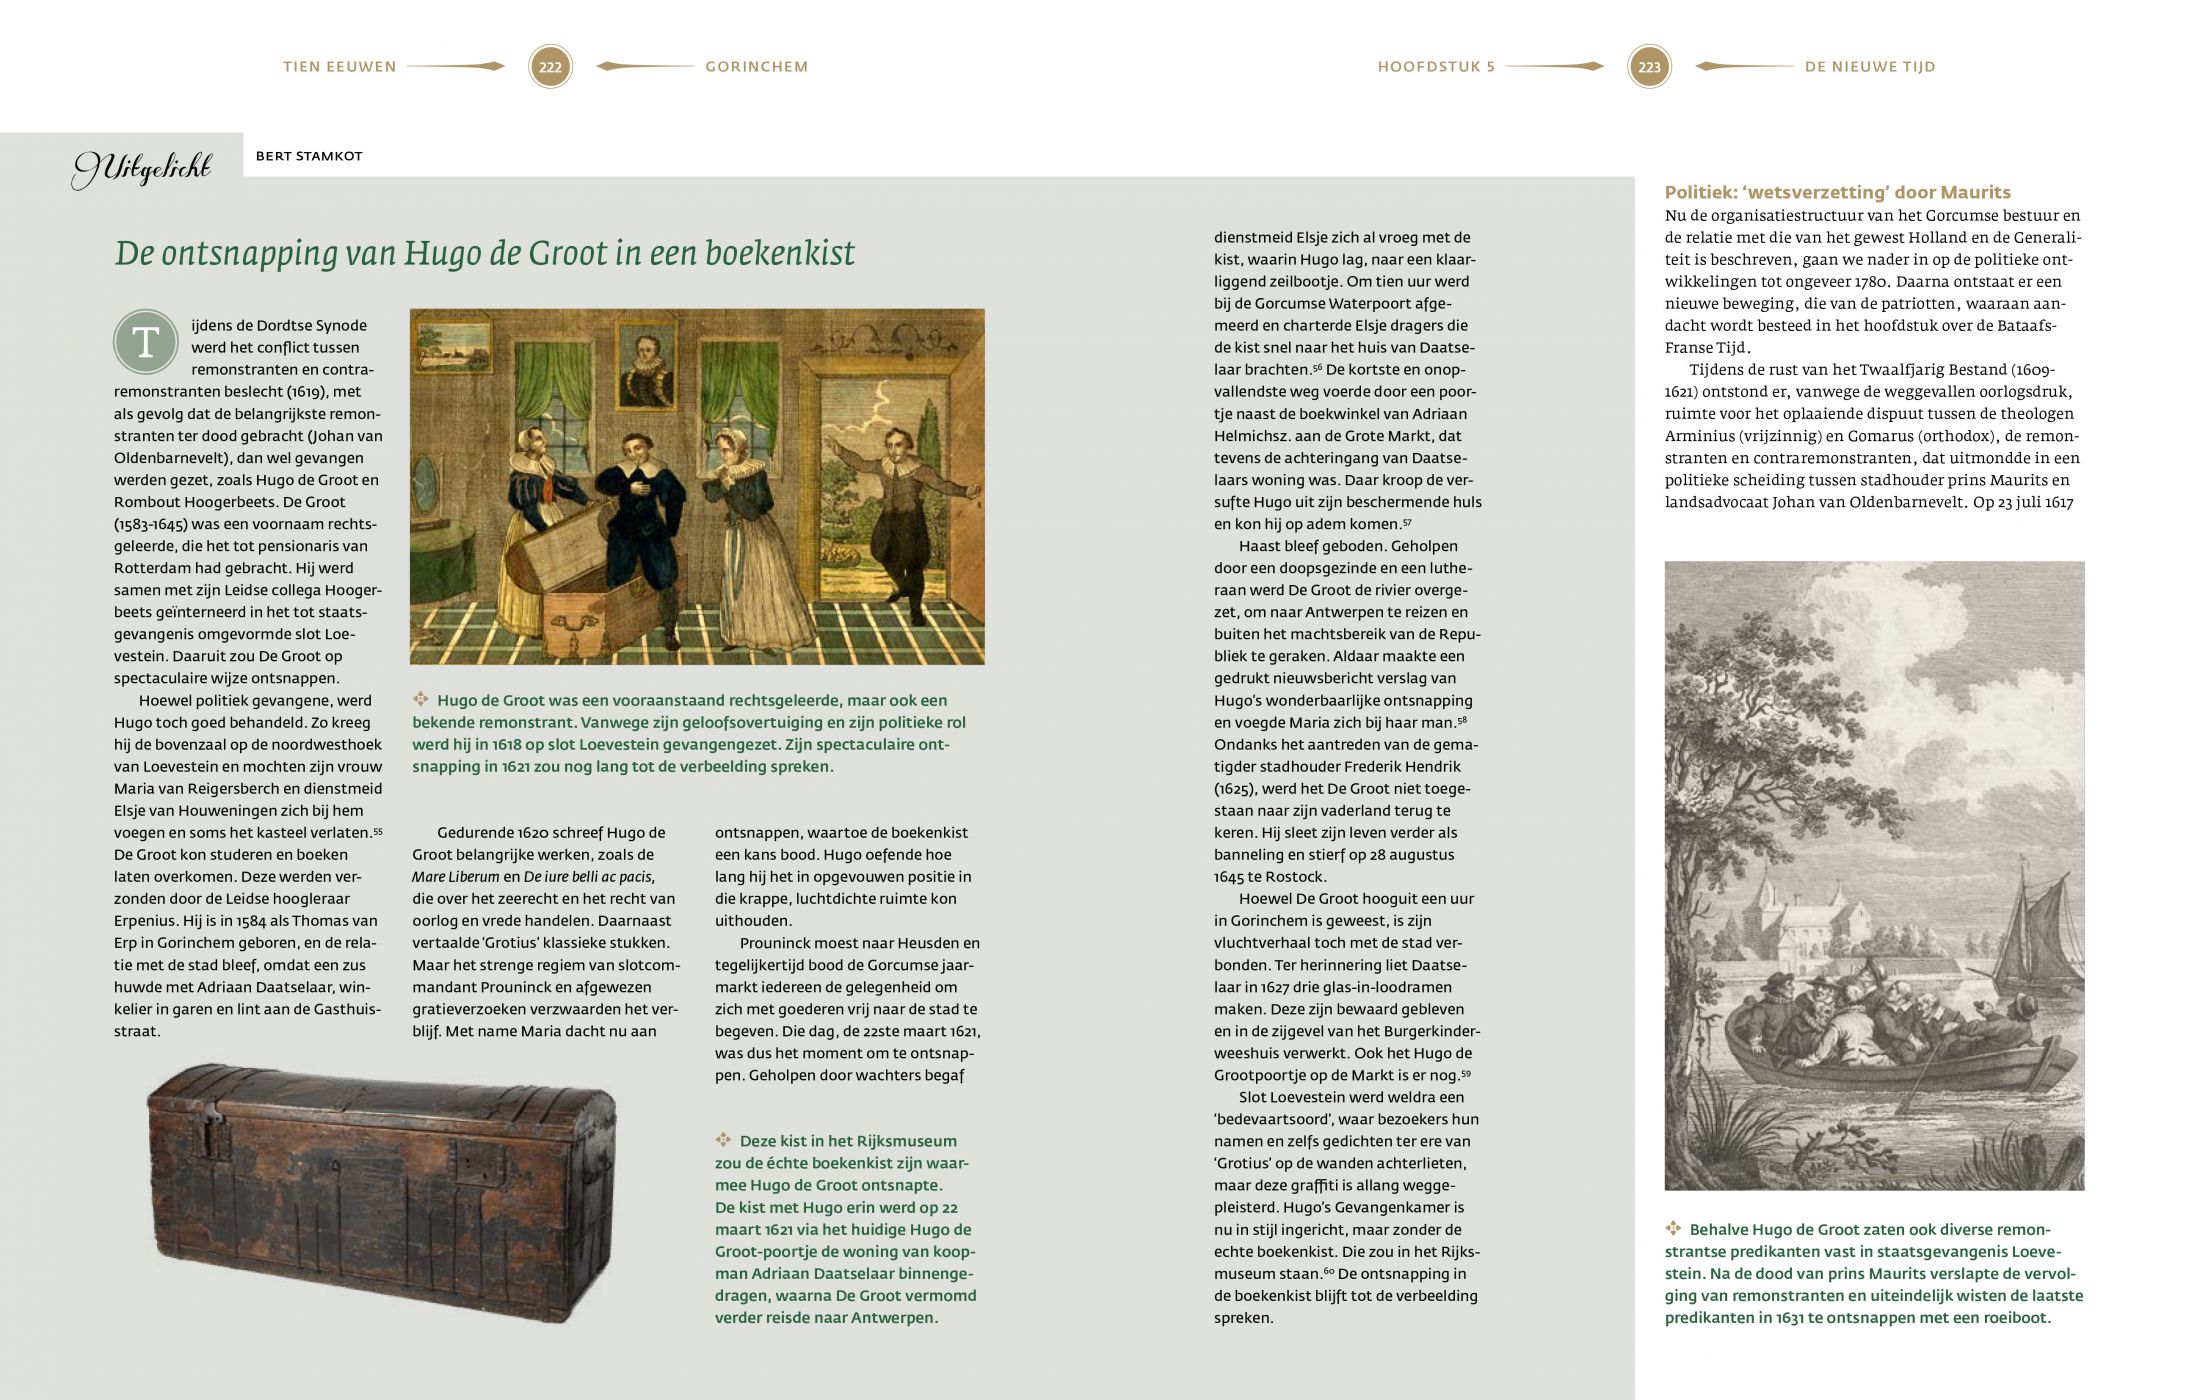 Inkijkexemplaar van het boek: <em>Tien eeuwen Gorinchem. Geschiedenis van een Hollandse stad</em> - © Uitgeverij Matrijs